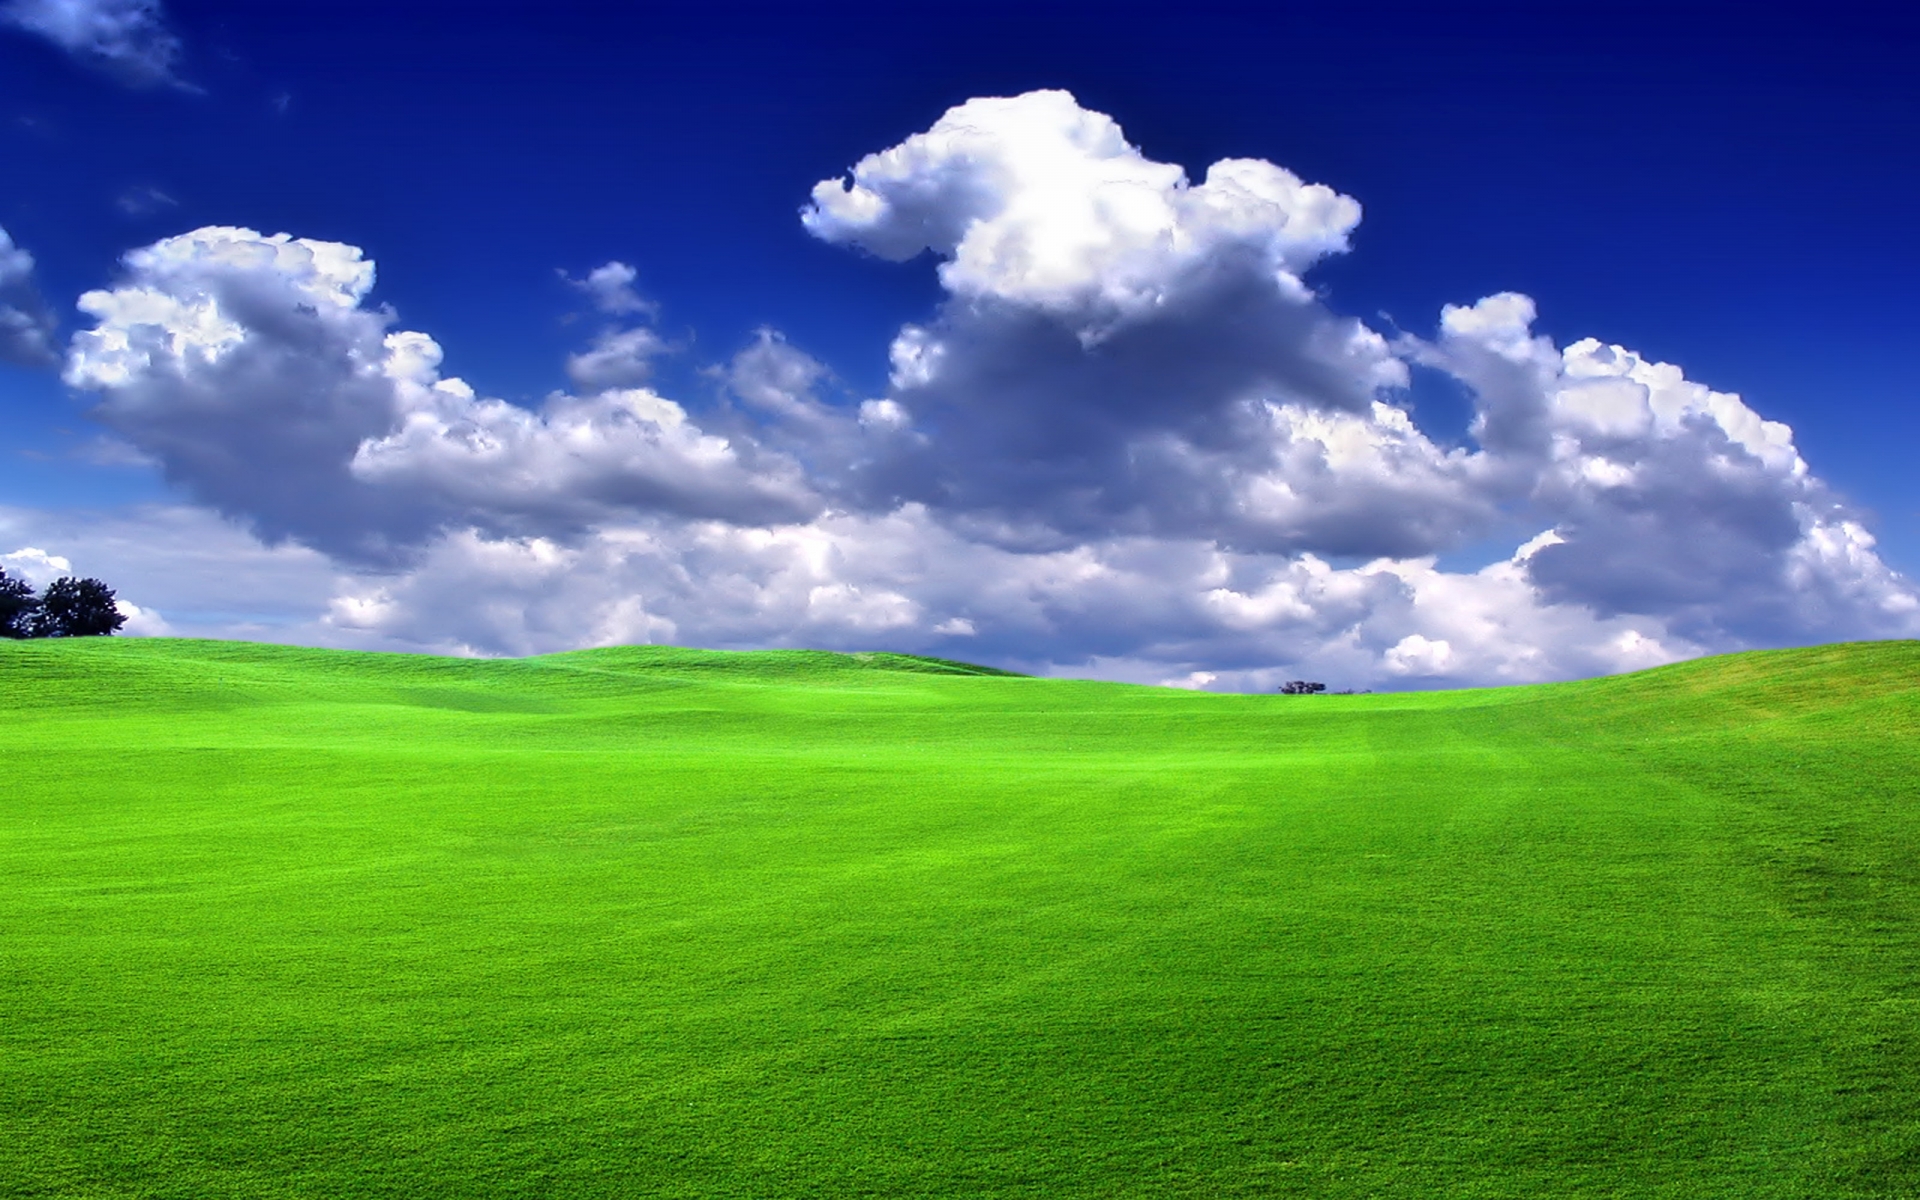 Grass & nature view - grass Wallpaper (30826213) - Fanpop